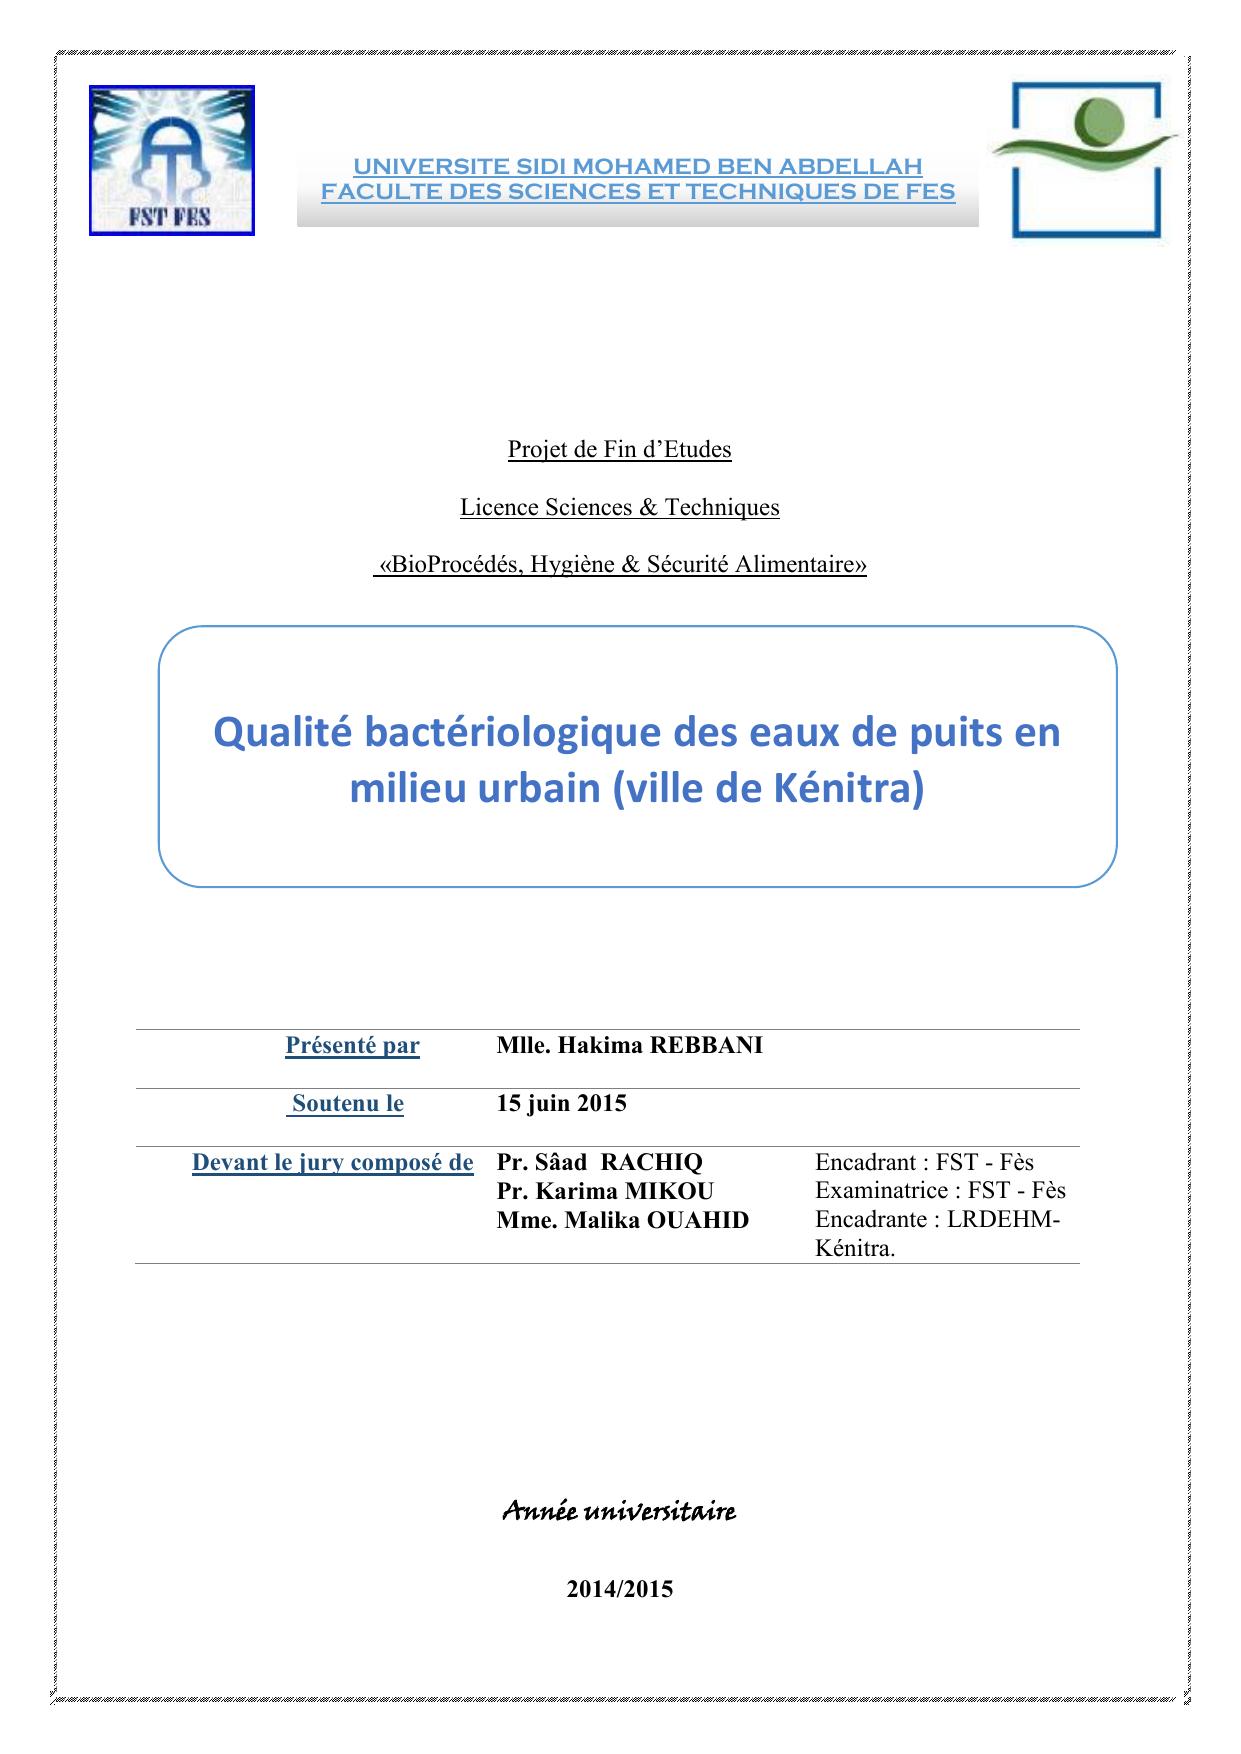 Qualité bactériologique des eaux de puits en milieu urbain (ville de Kénitra)